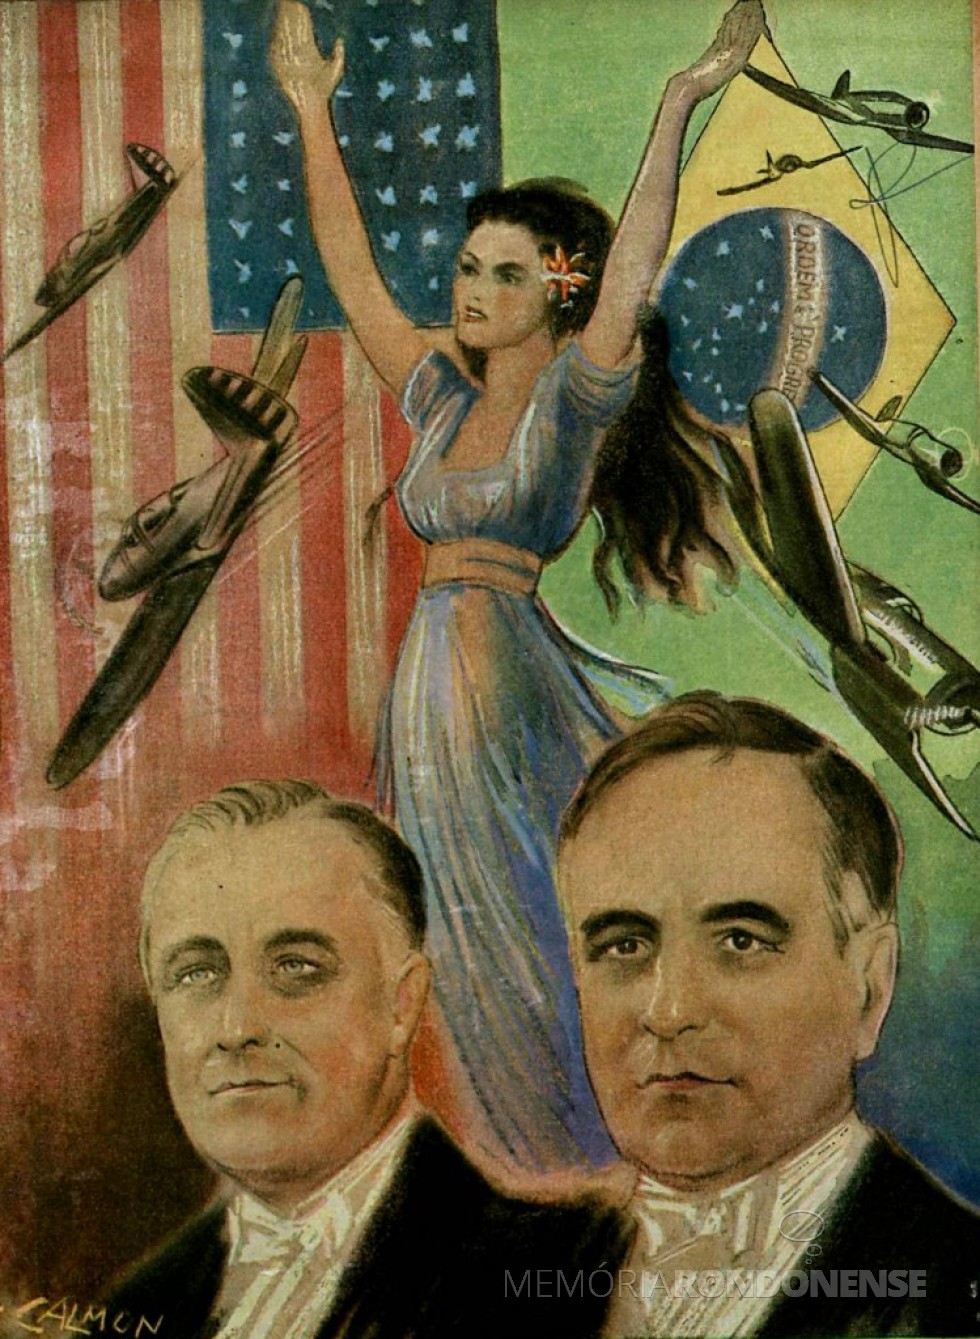 Alegoria celebrando a Aliança entre os Estados Unidos de Franklin D. Roosevelt e o Brasil de Getúlio Vargas durante a Segunda Guerra Mundial, em 1942. Pintura de Calmon Barreto.
Imagem: Acervo O Passado do Brasil/Facebbok - FOTO 6 -